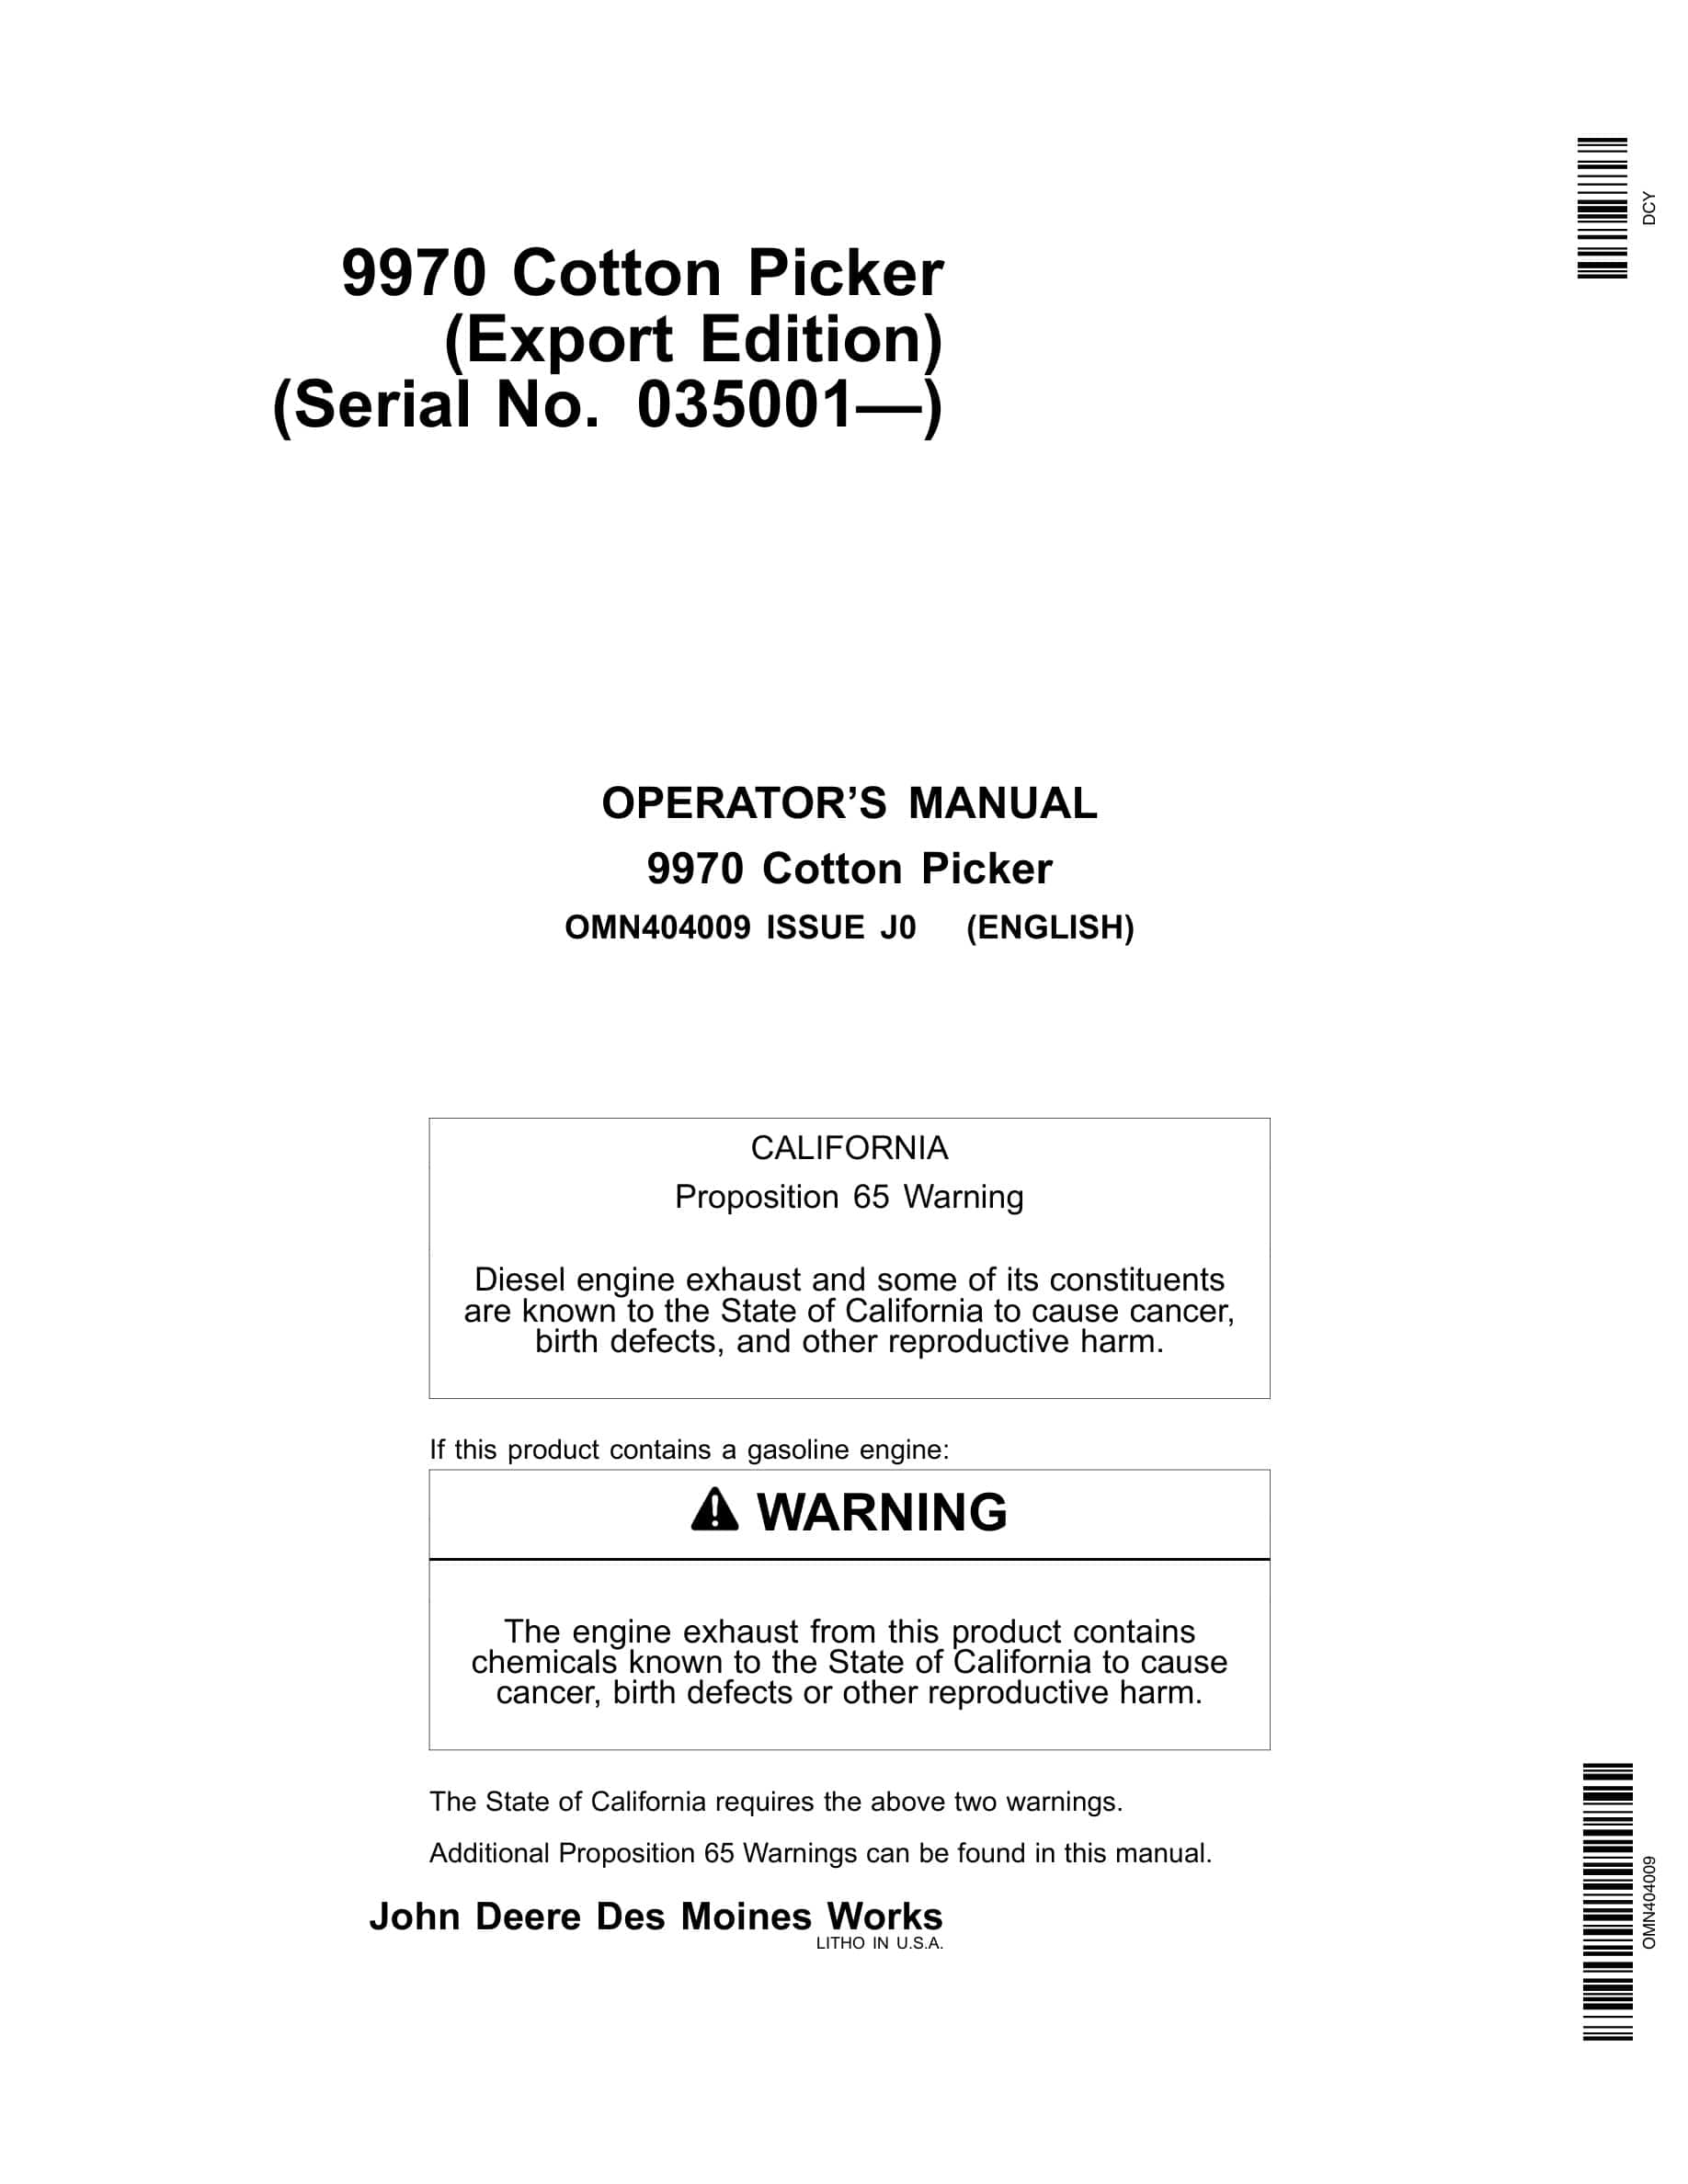 John Deere 9970 Cotton Picker Operator Manual OMN404009-1